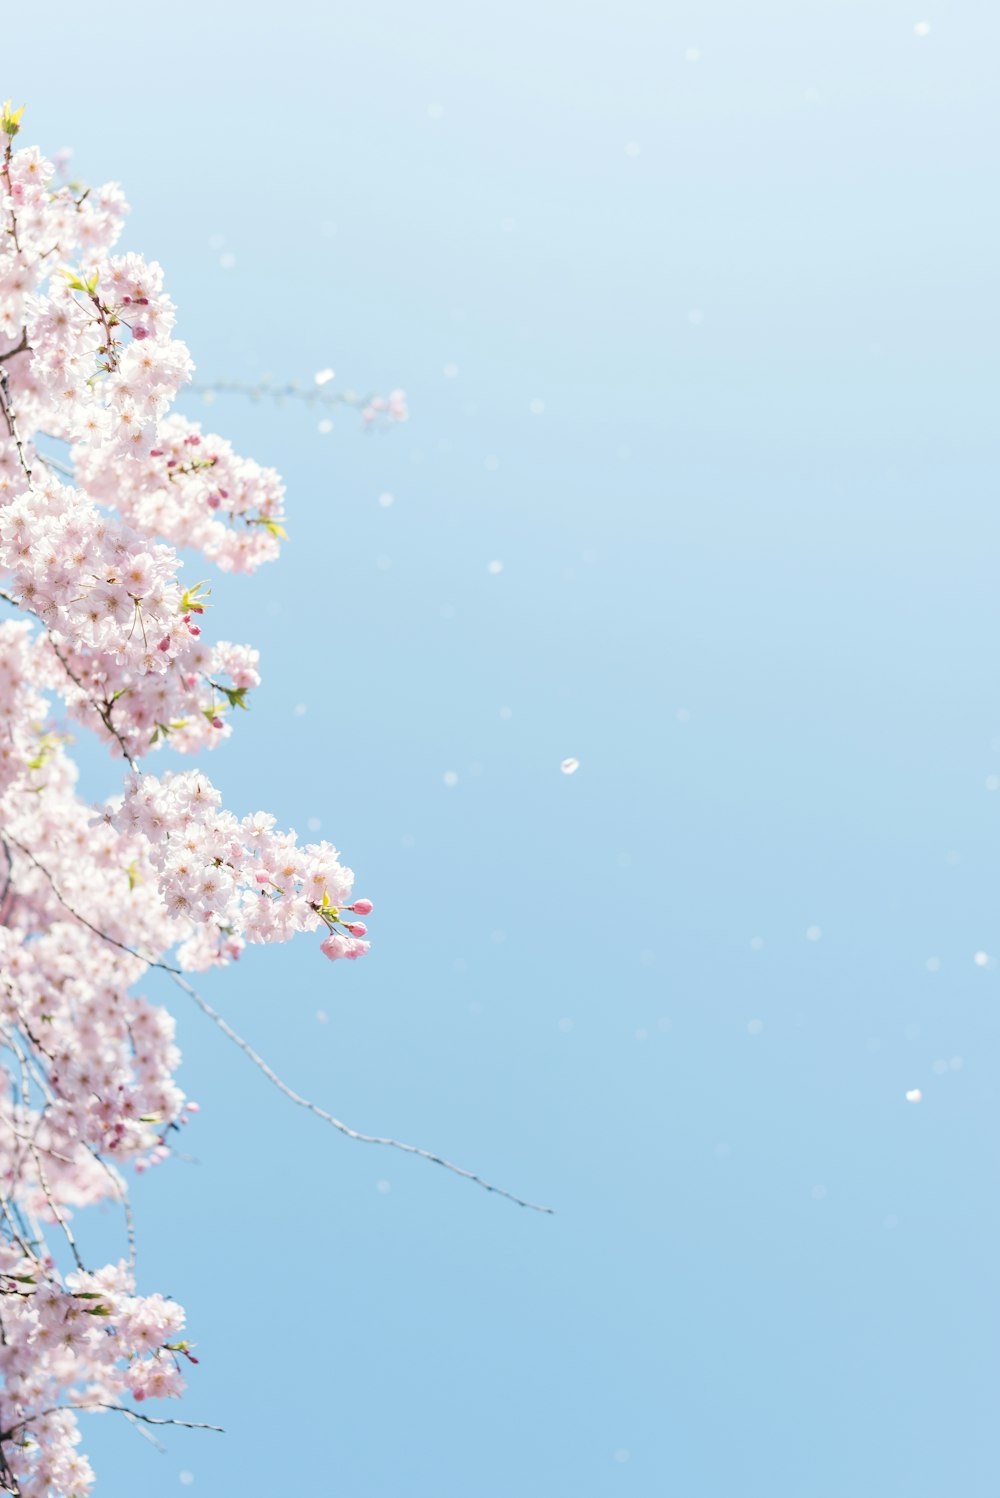 fiore di ciliegio sotto il cielo blu